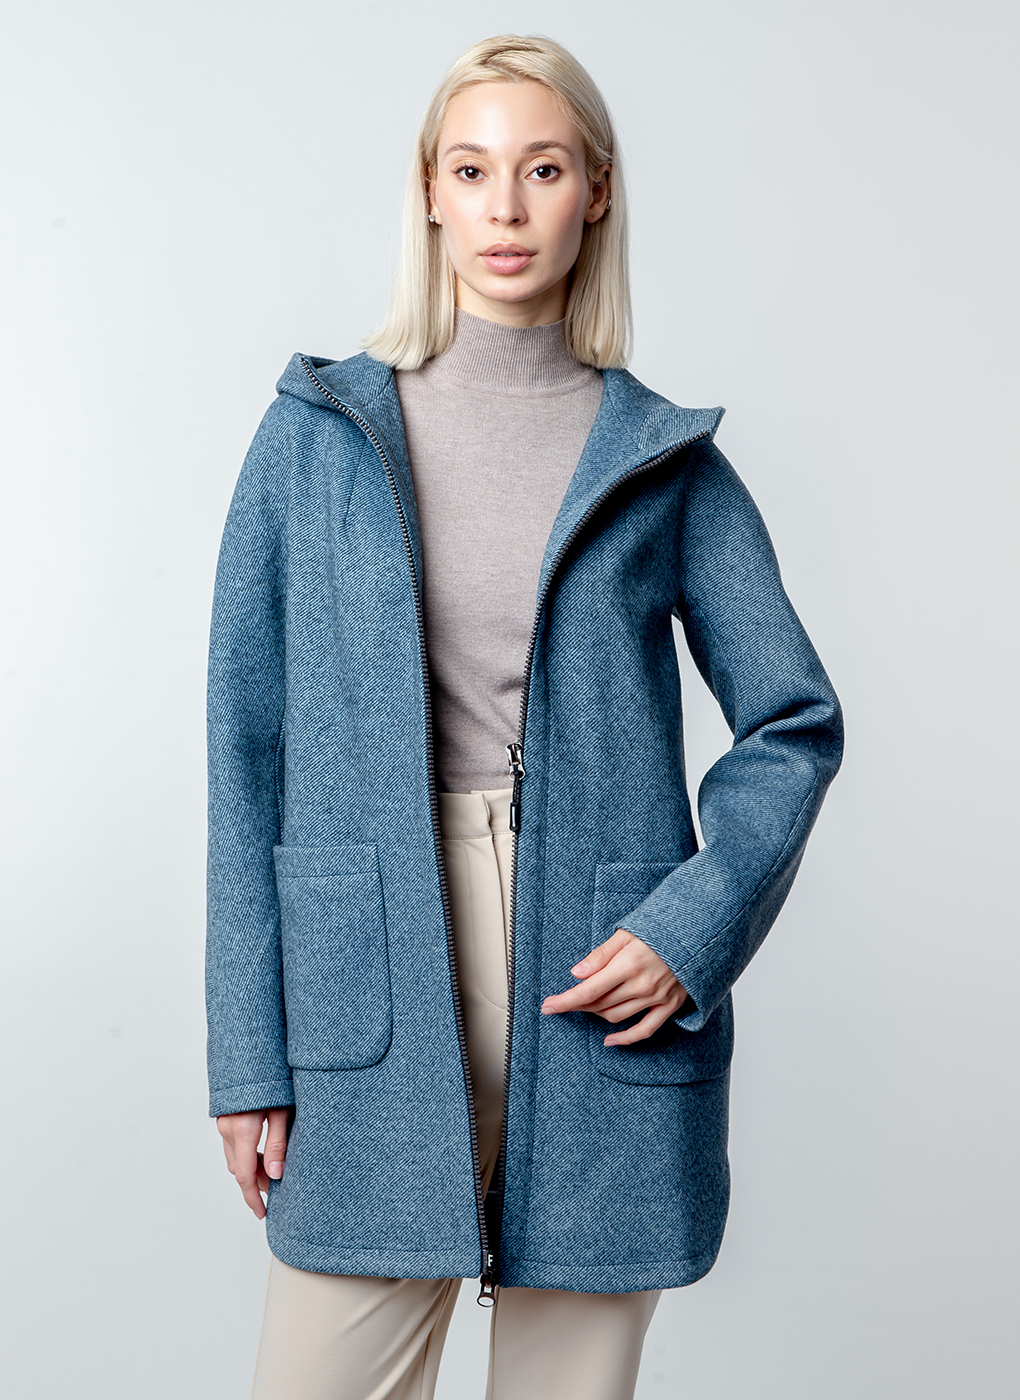 Пальто женское Каляев 52662 синее 48 RU